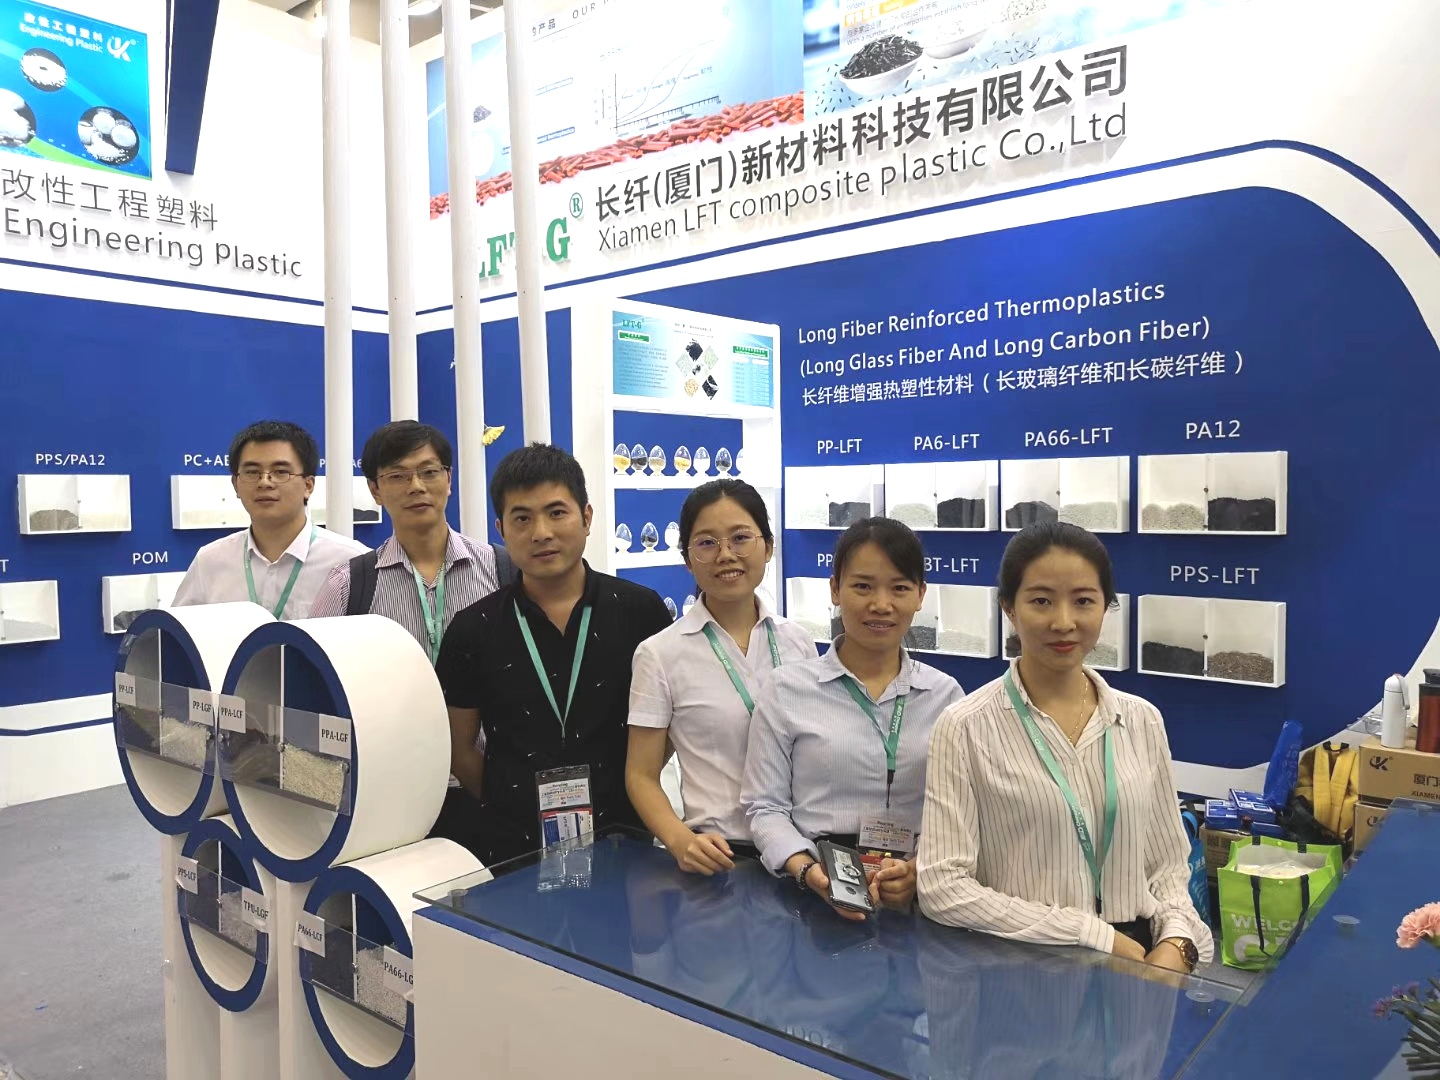 Xiamen LFT composite plastic factory in Chinaplas